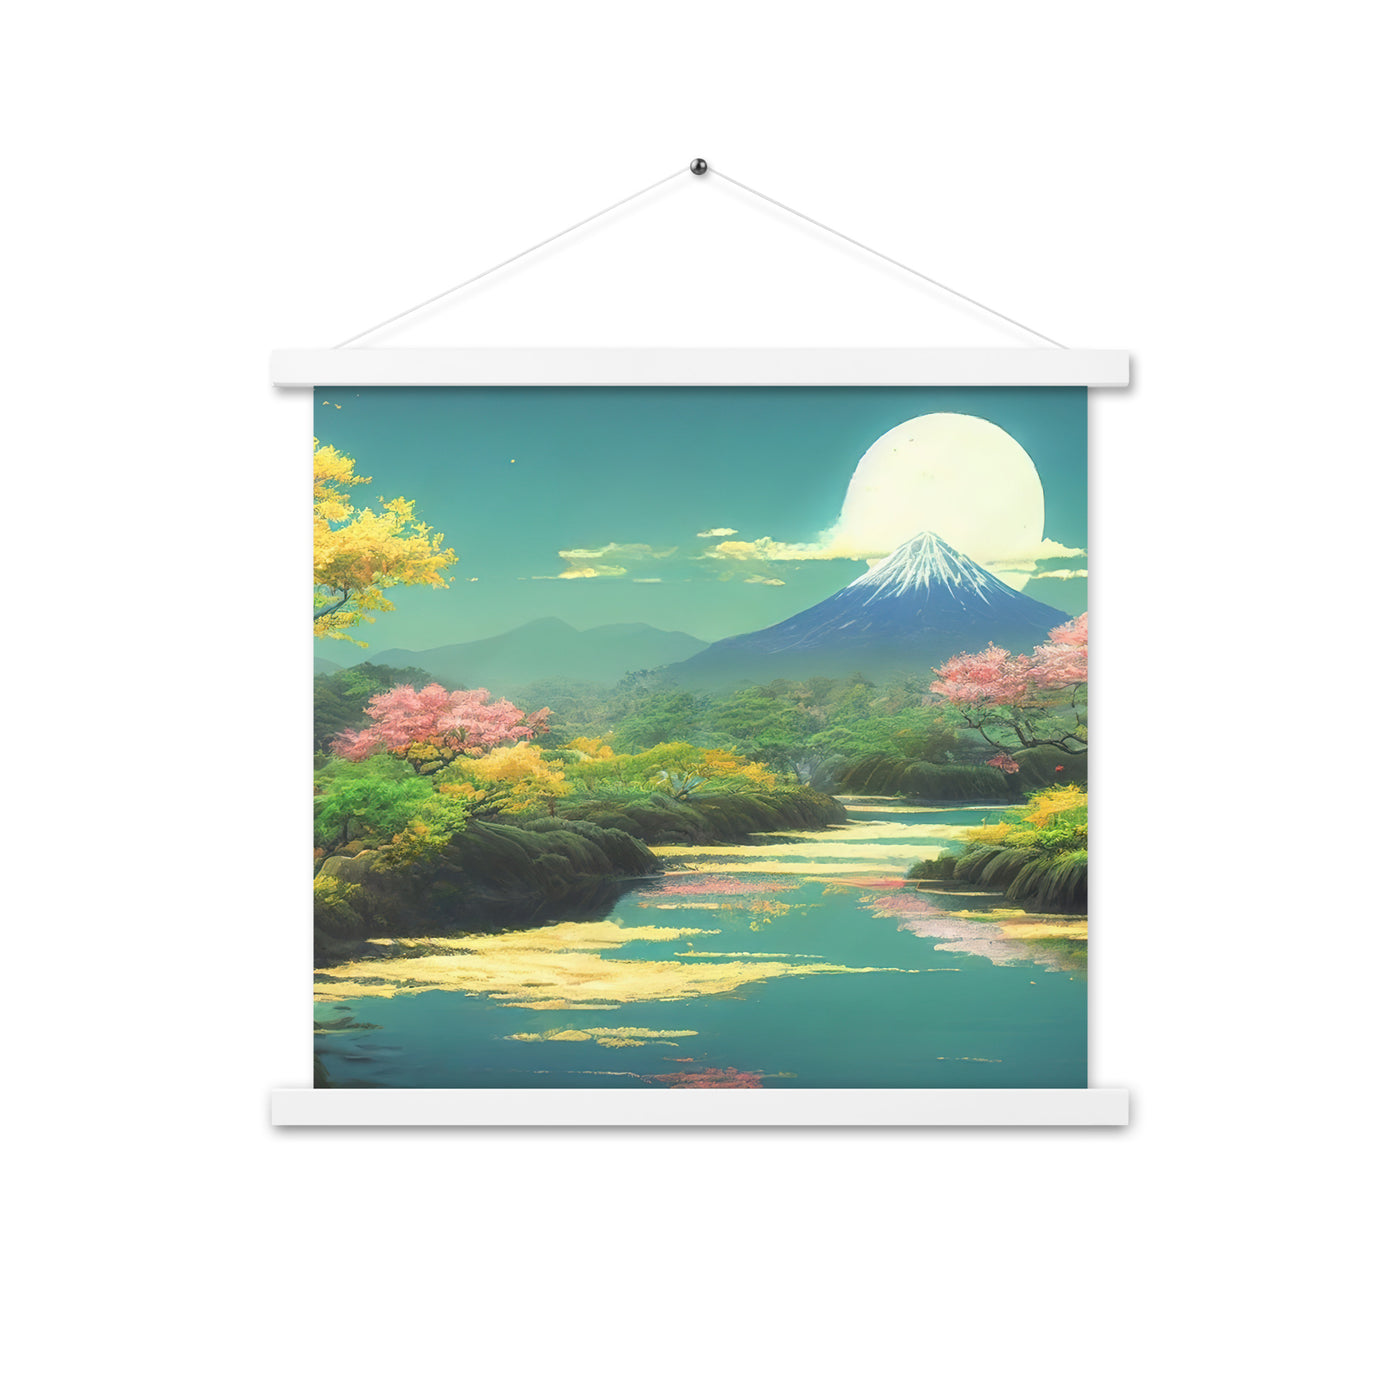 Berg, See und Wald mit pinken Bäumen - Landschaftsmalerei - Premium Poster mit Aufhängung berge xxx 45.7 x 45.7 cm